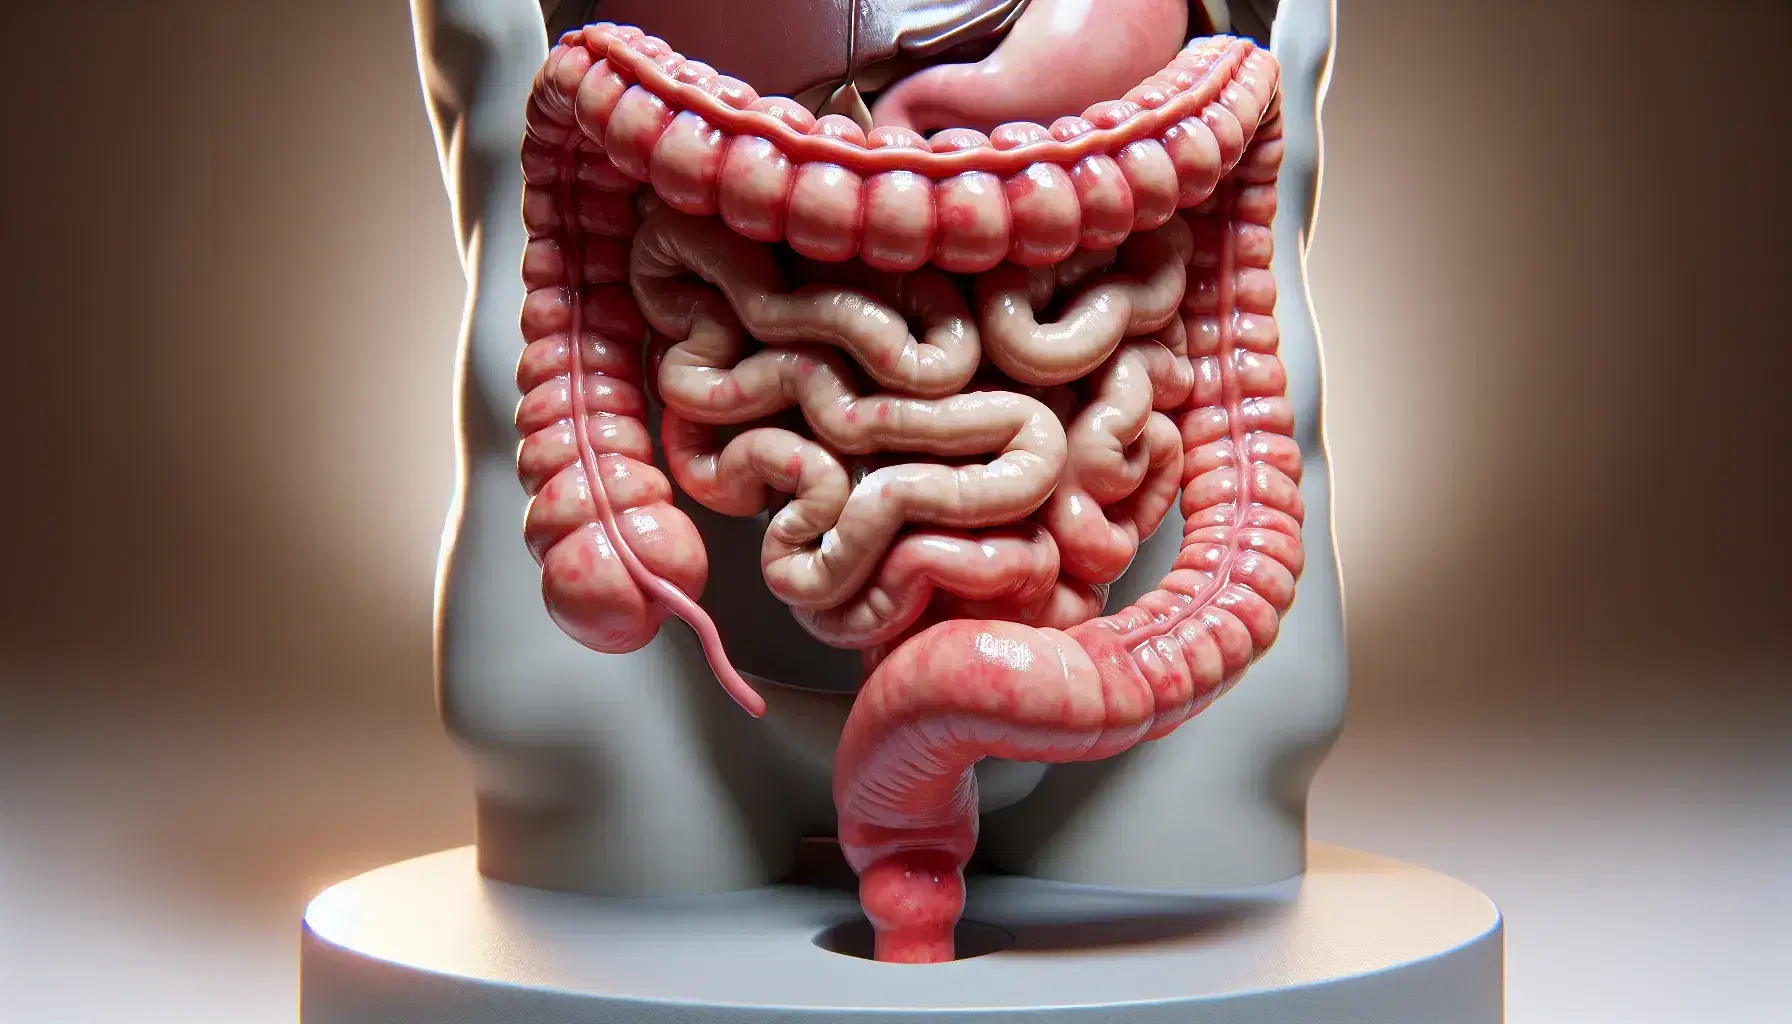 Modelo anatómico tridimensional detallado del intestino grueso humano mostrando ciego, colon ascendente, transverso, descendente, sigmoide, apéndice y recto.